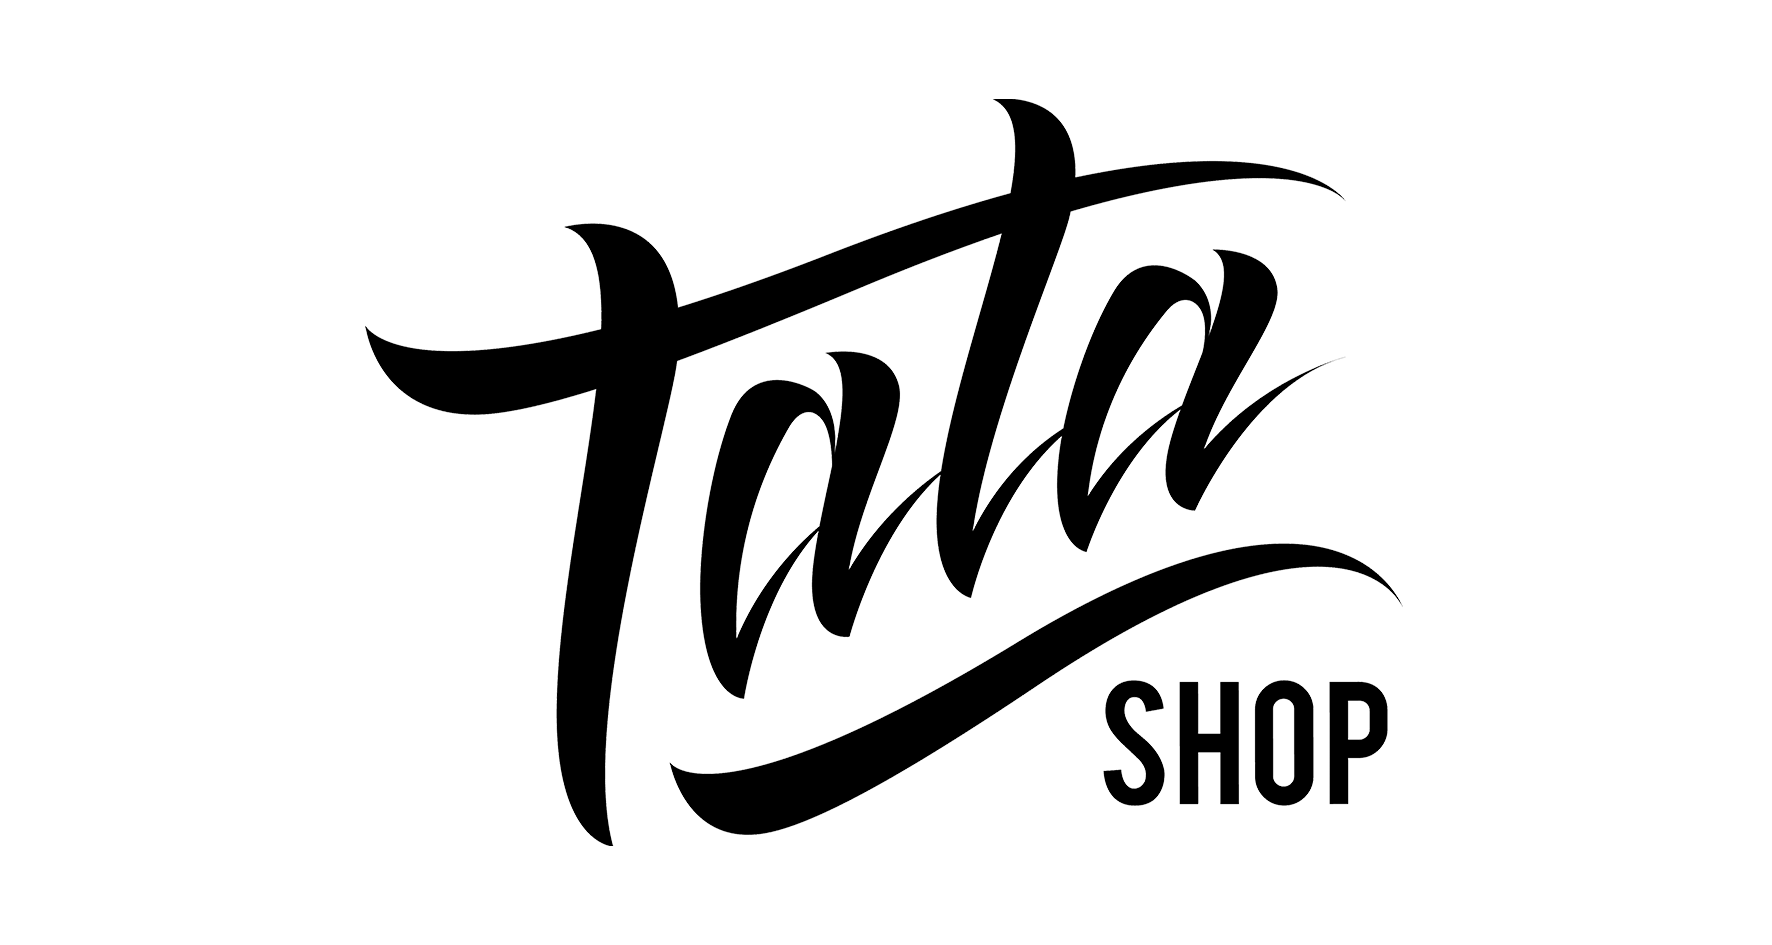 Tata Shop Одежда и аксессуары, купить онлайн, Tata Shop в универмаге Bolshoy